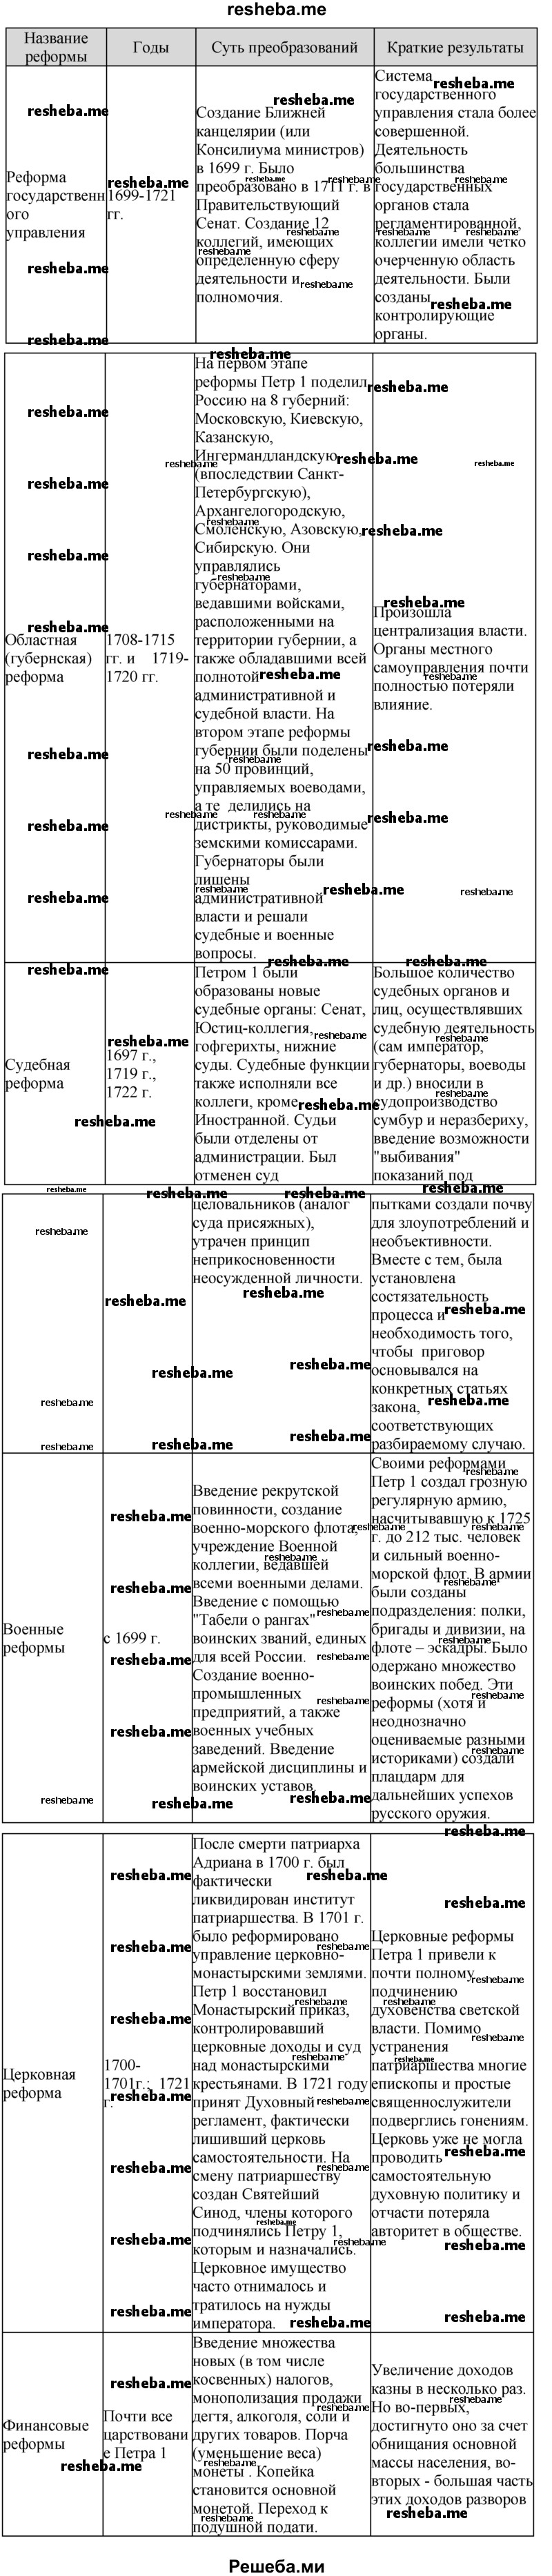 По материалам параграфа составьте таблицу в тетради, содержащую данные об основных реформах петровского времени и их значении